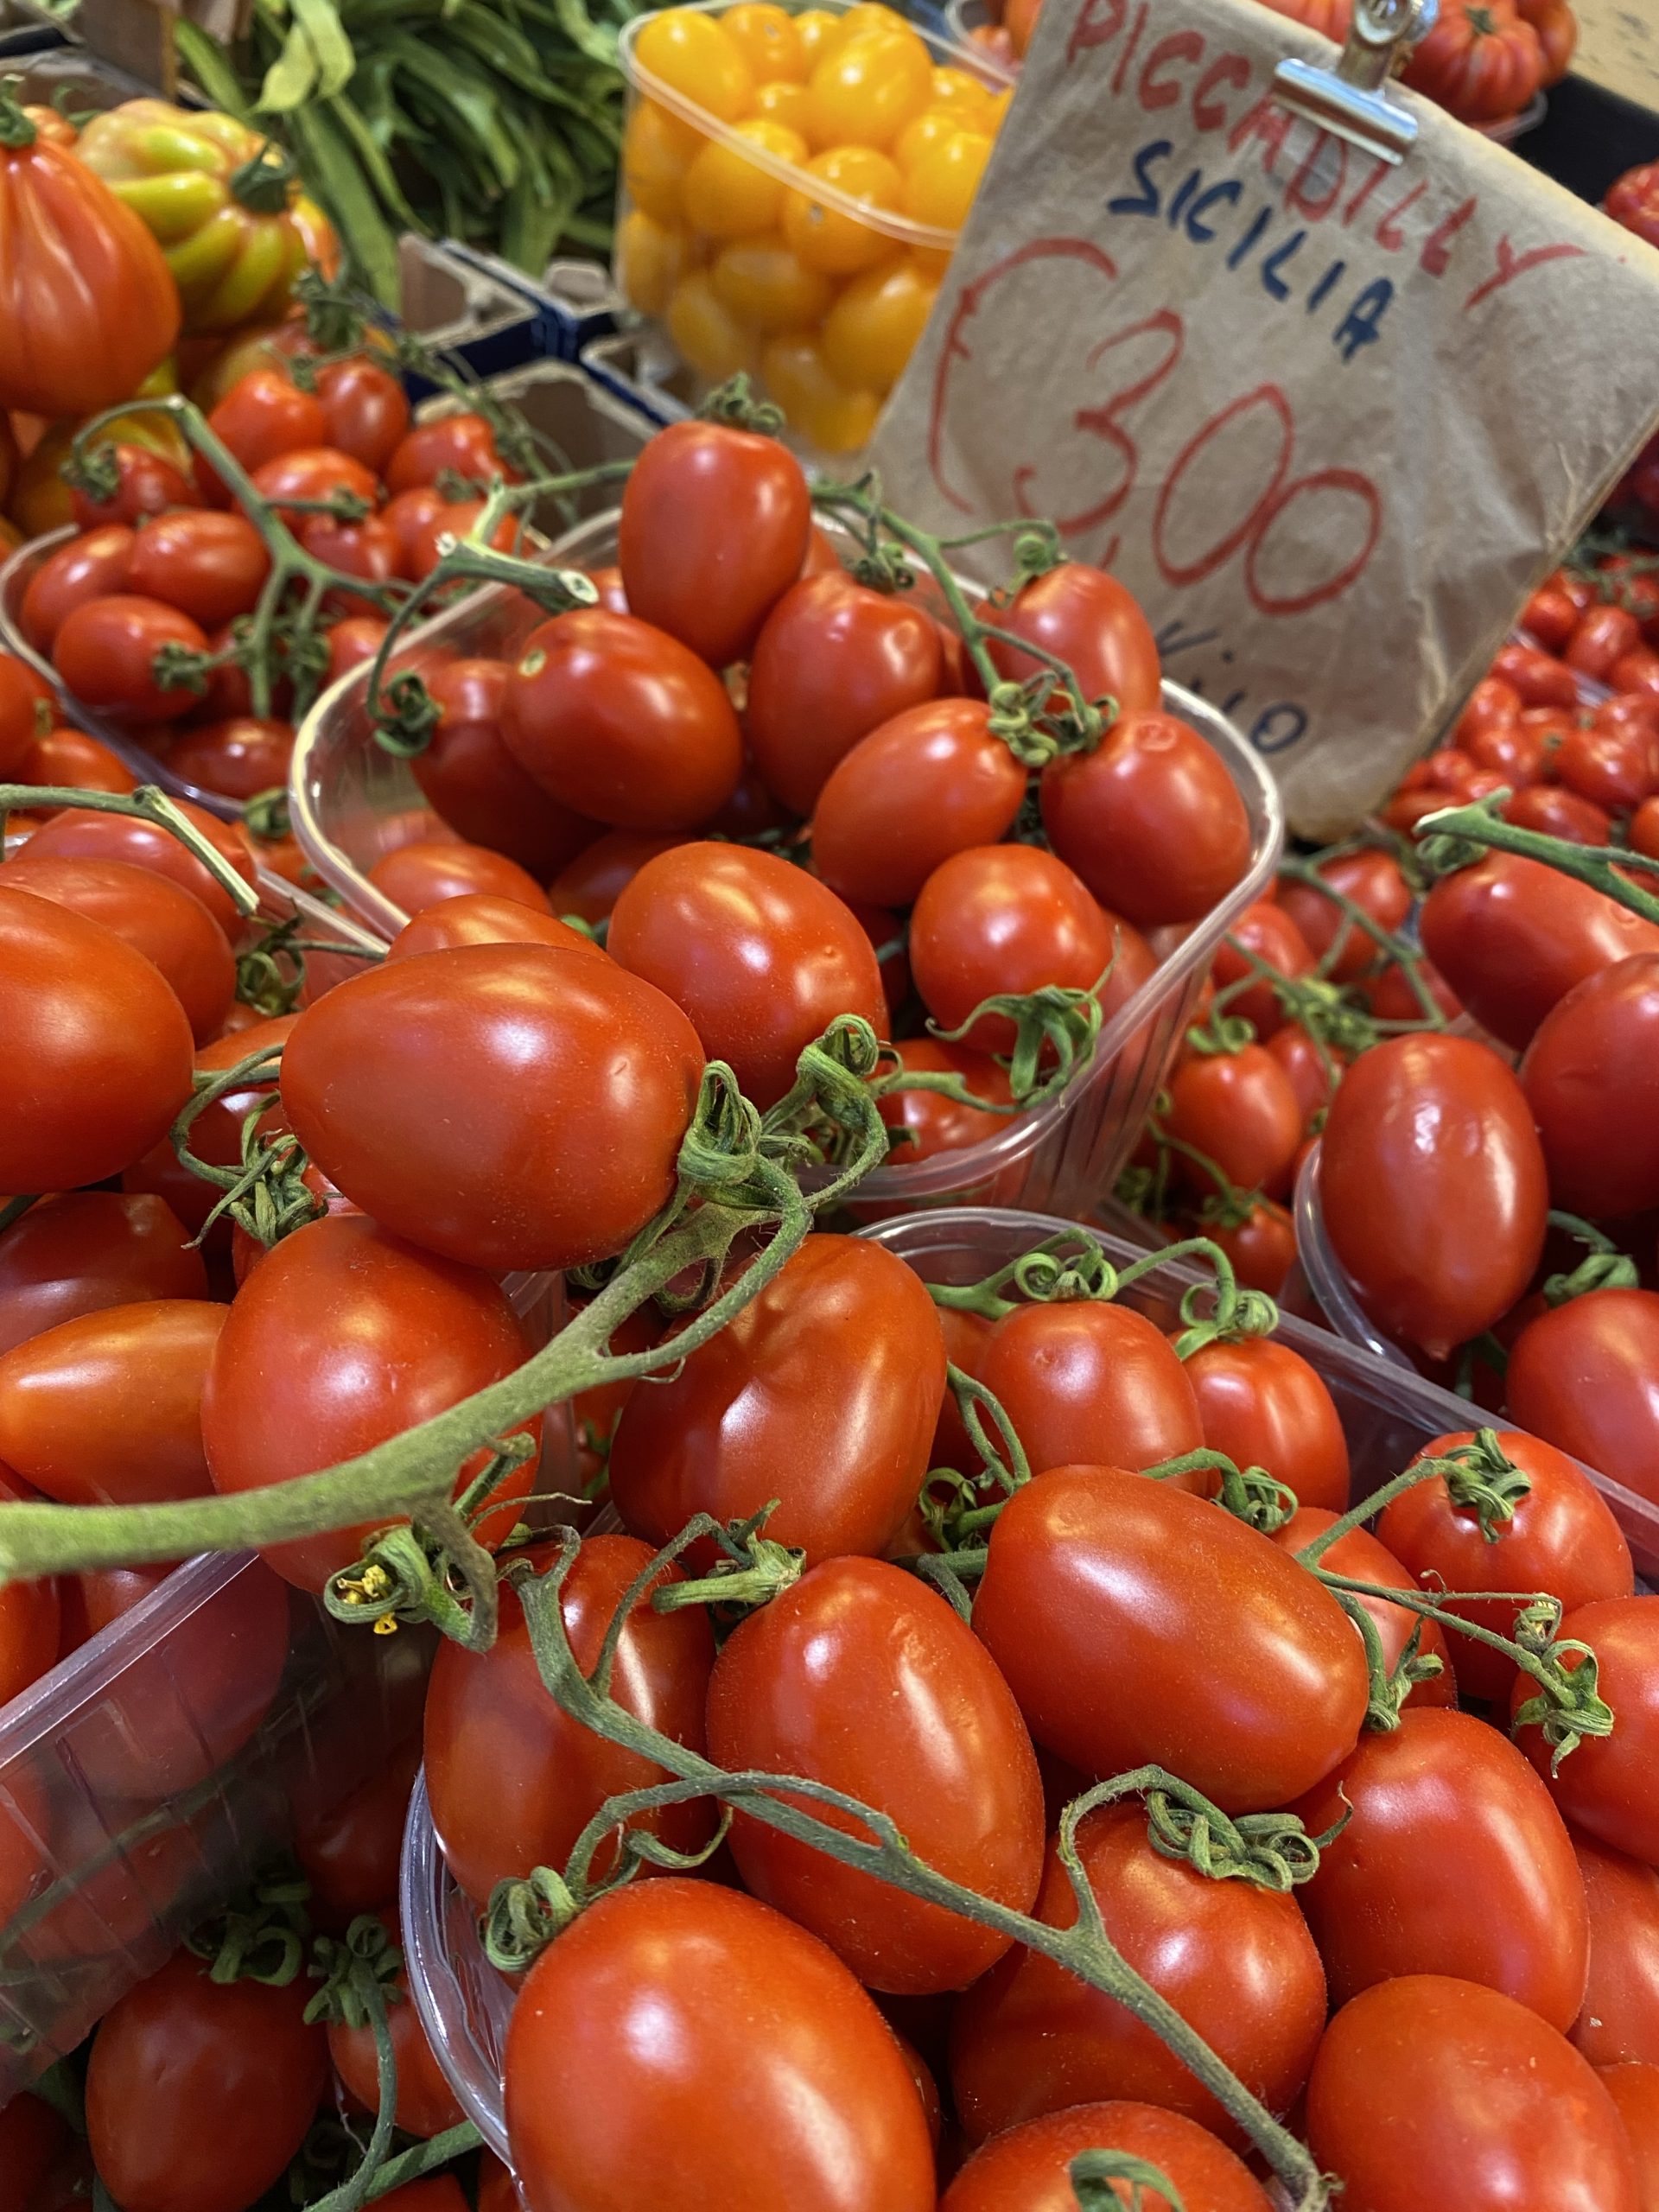 Grape tomatoes on the vine, Mercato dei Fiori, Ventimiglia, Italy, Ventimille, Italie